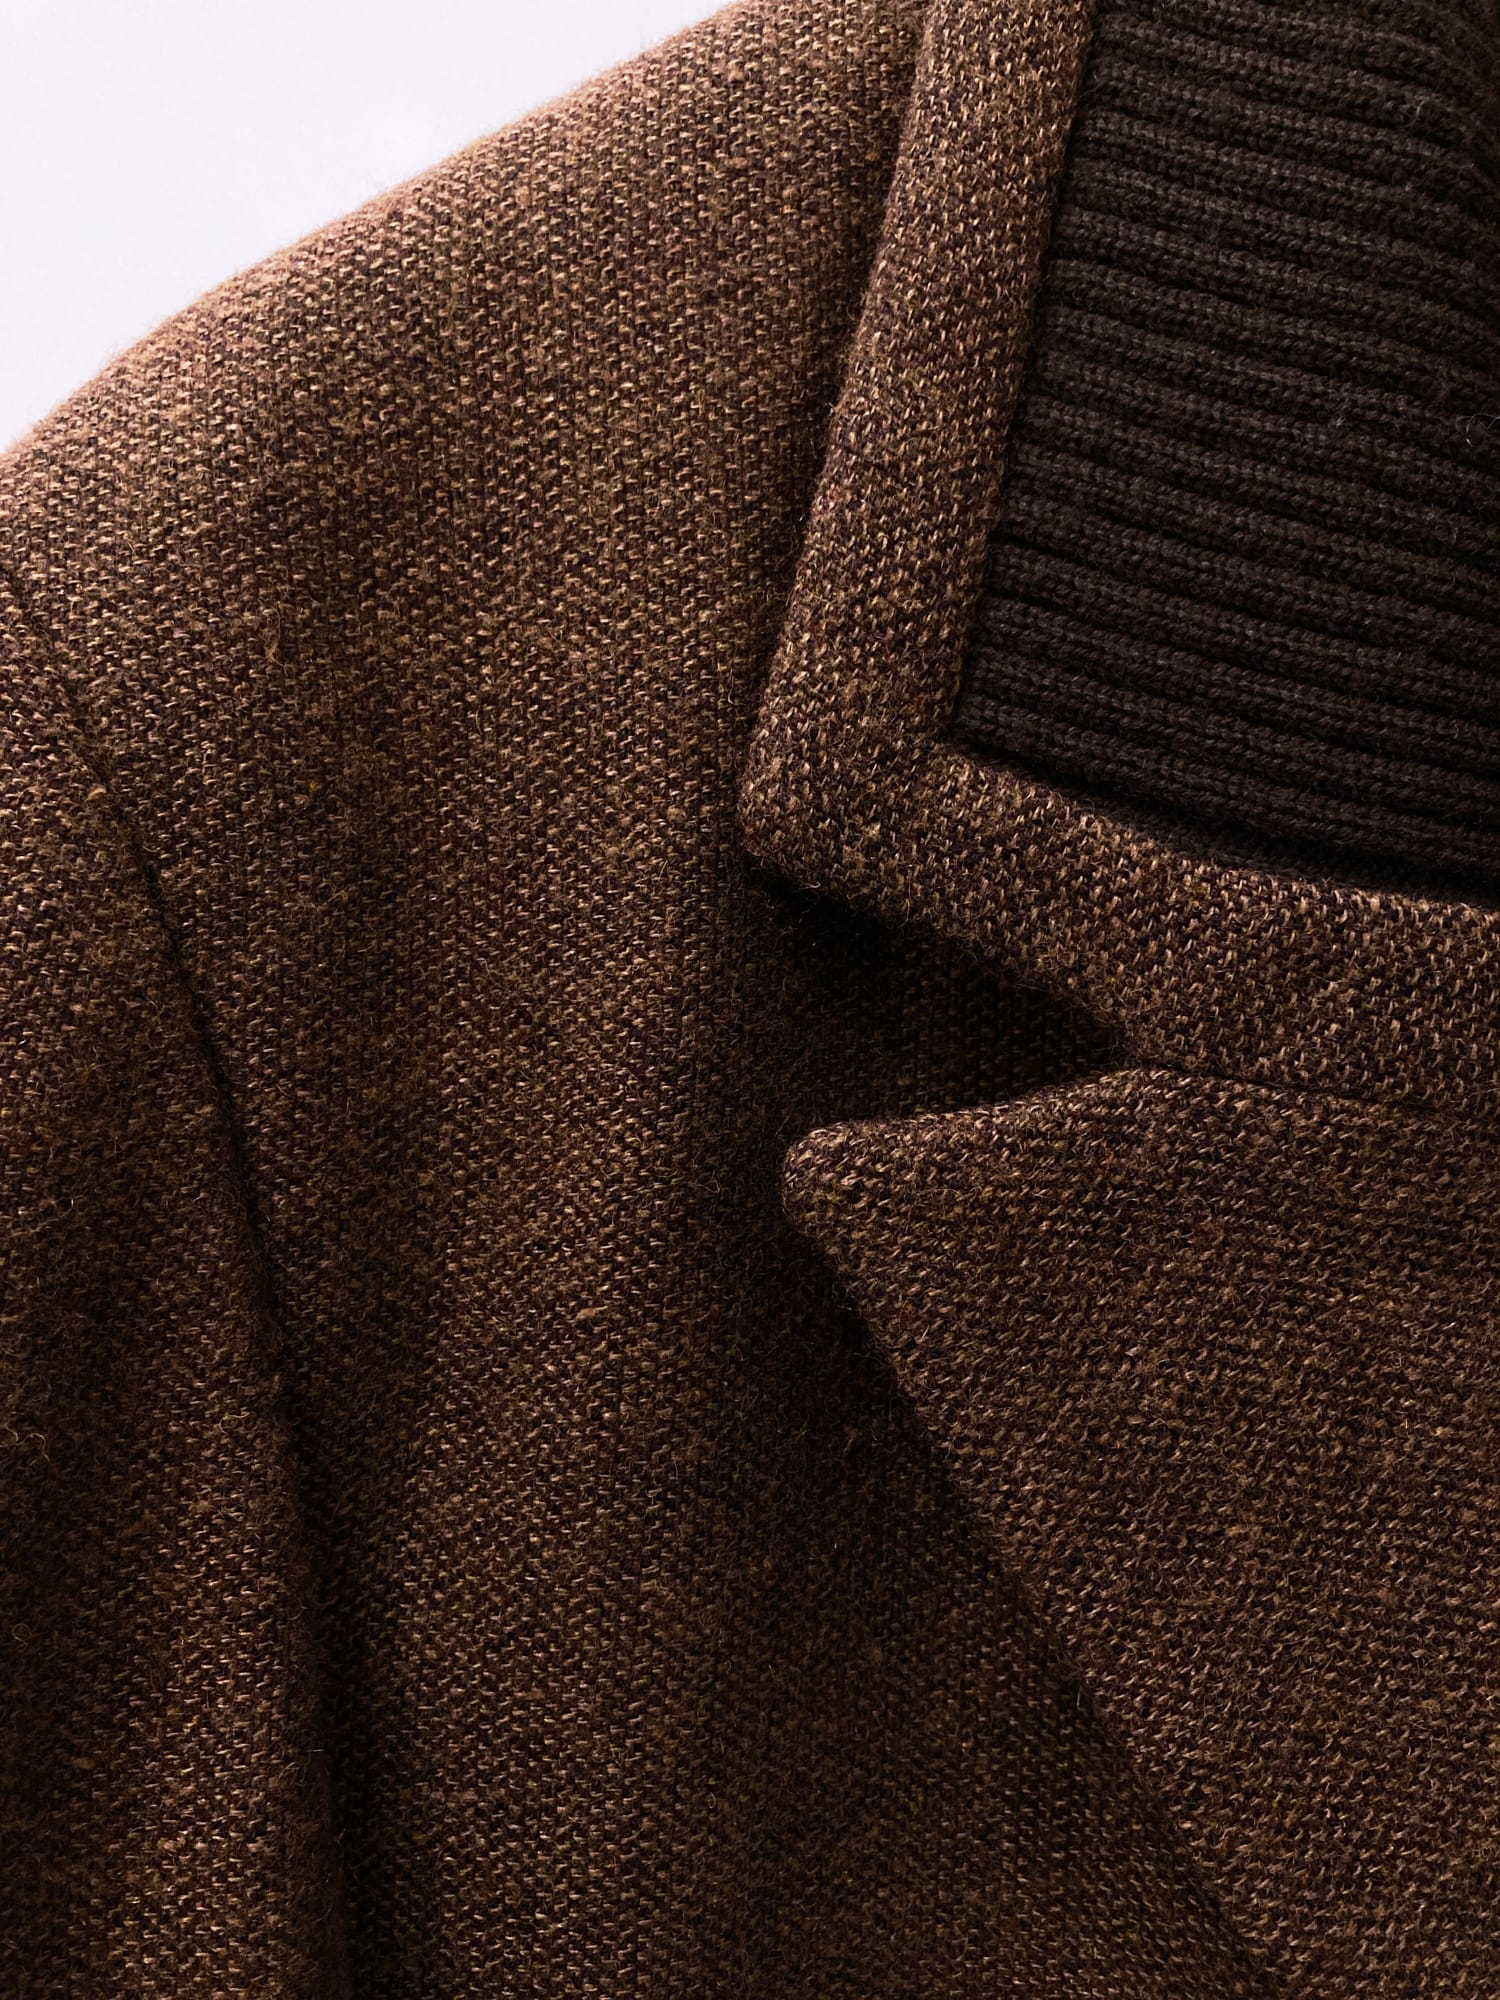 Dirk Bikkembergs Hommes 1980s brown wool four button blazer